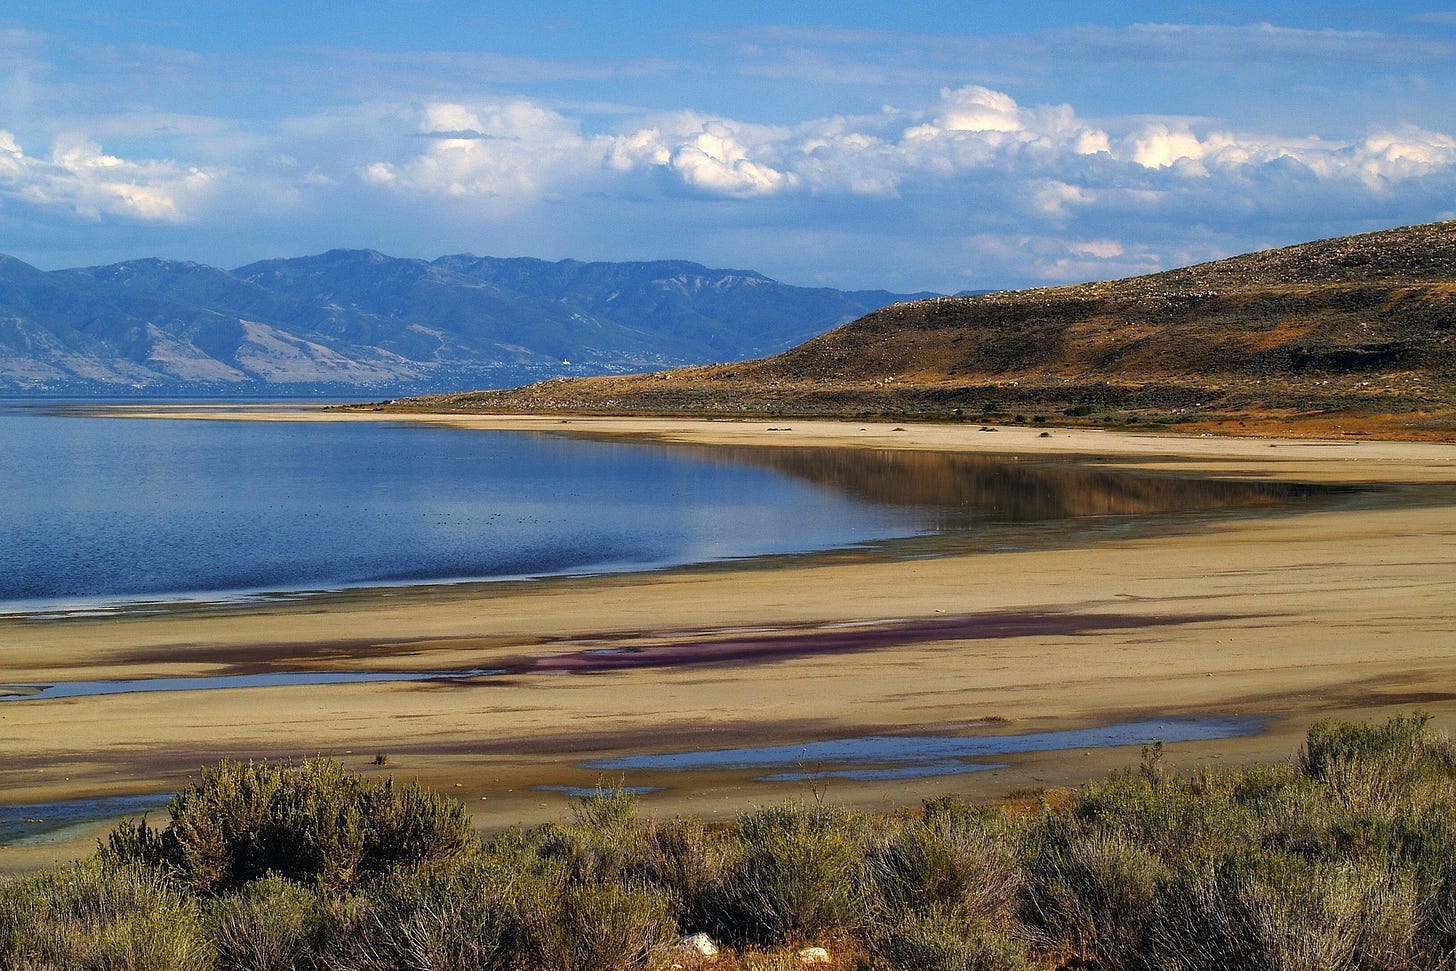 Scenic view of Utah's Great Salt Lake